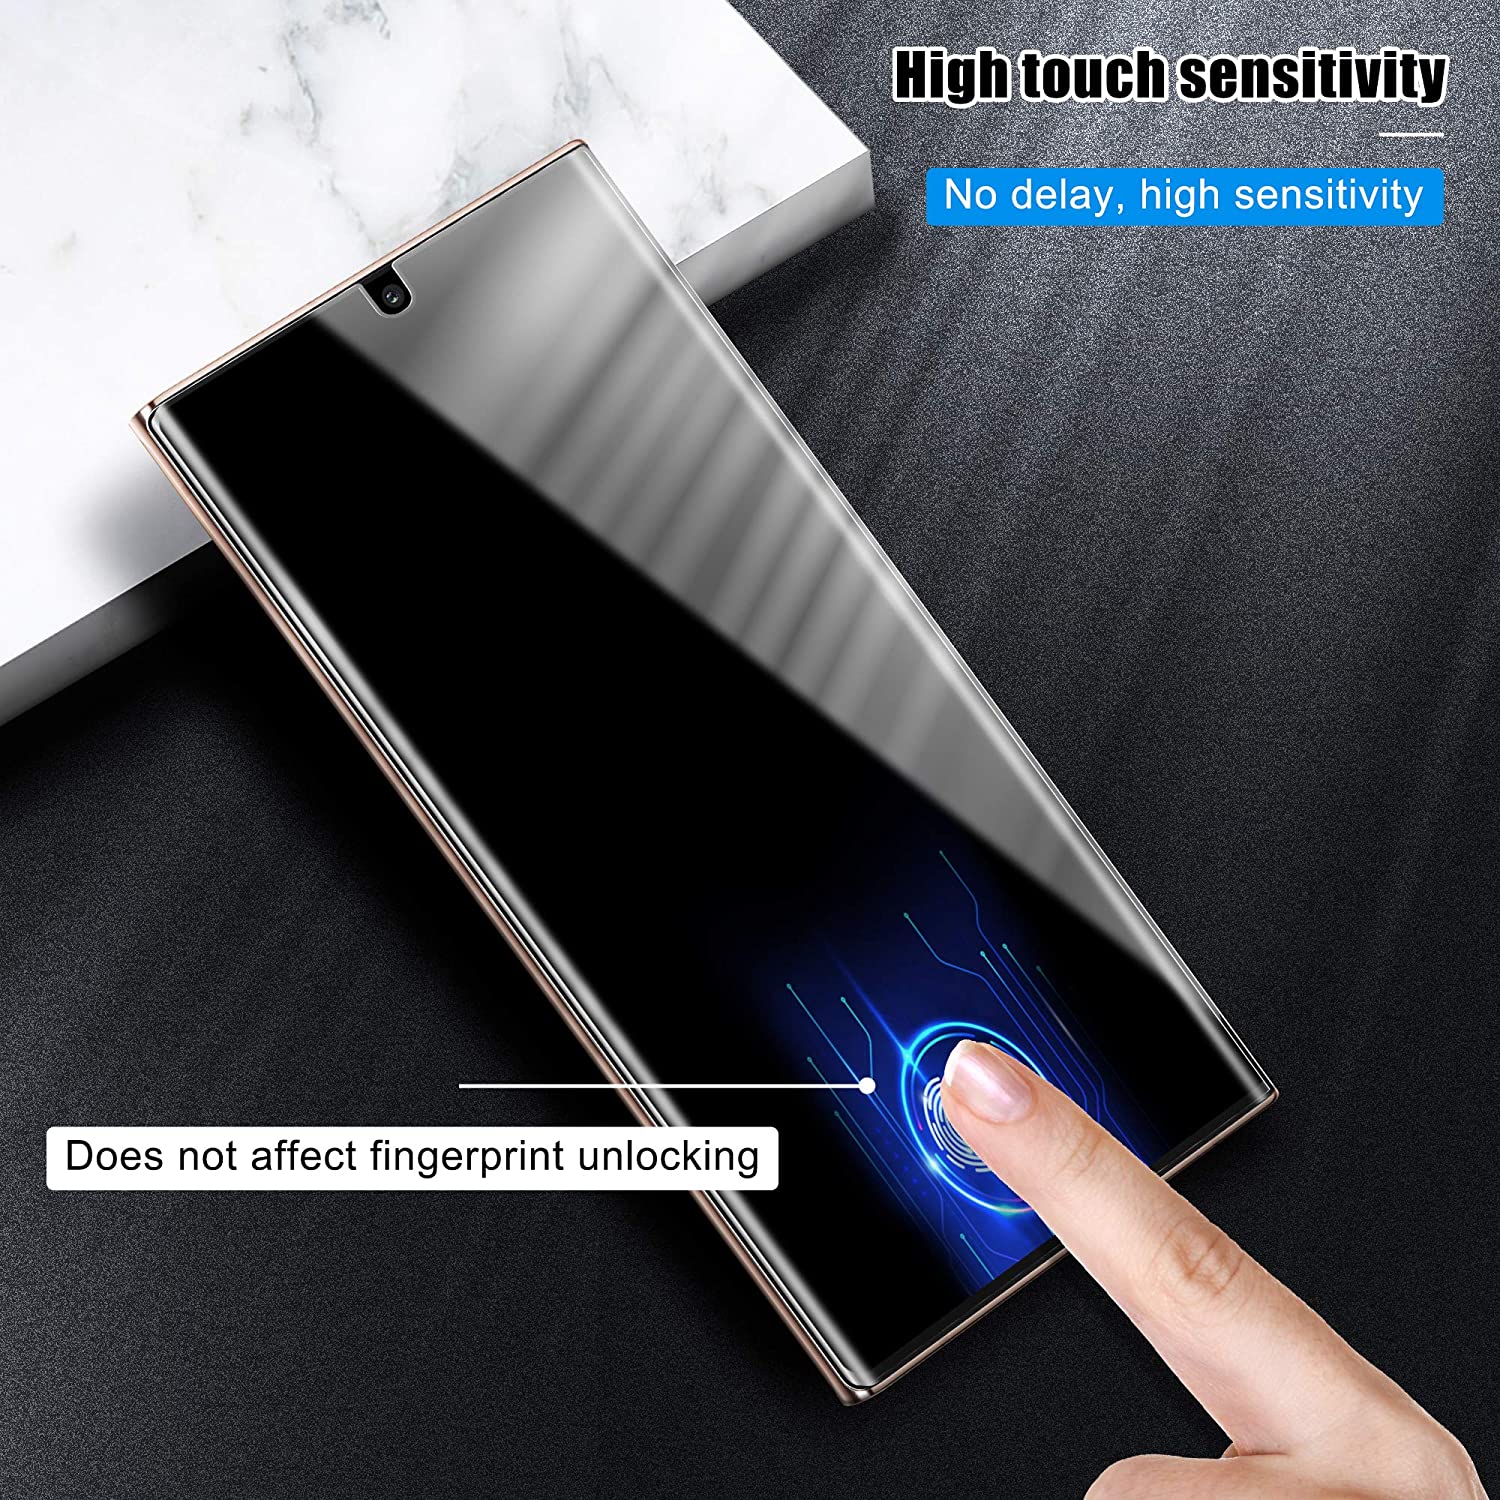 Miếng dán màn hình chống trầy cho Samsung Galaxy Note 20 Ultra hiệu Vmax (siêu mỏng 0.2mm, độ trong tuyệt đối, chống trầy xước chống bụi) - hàng nhập khẩu